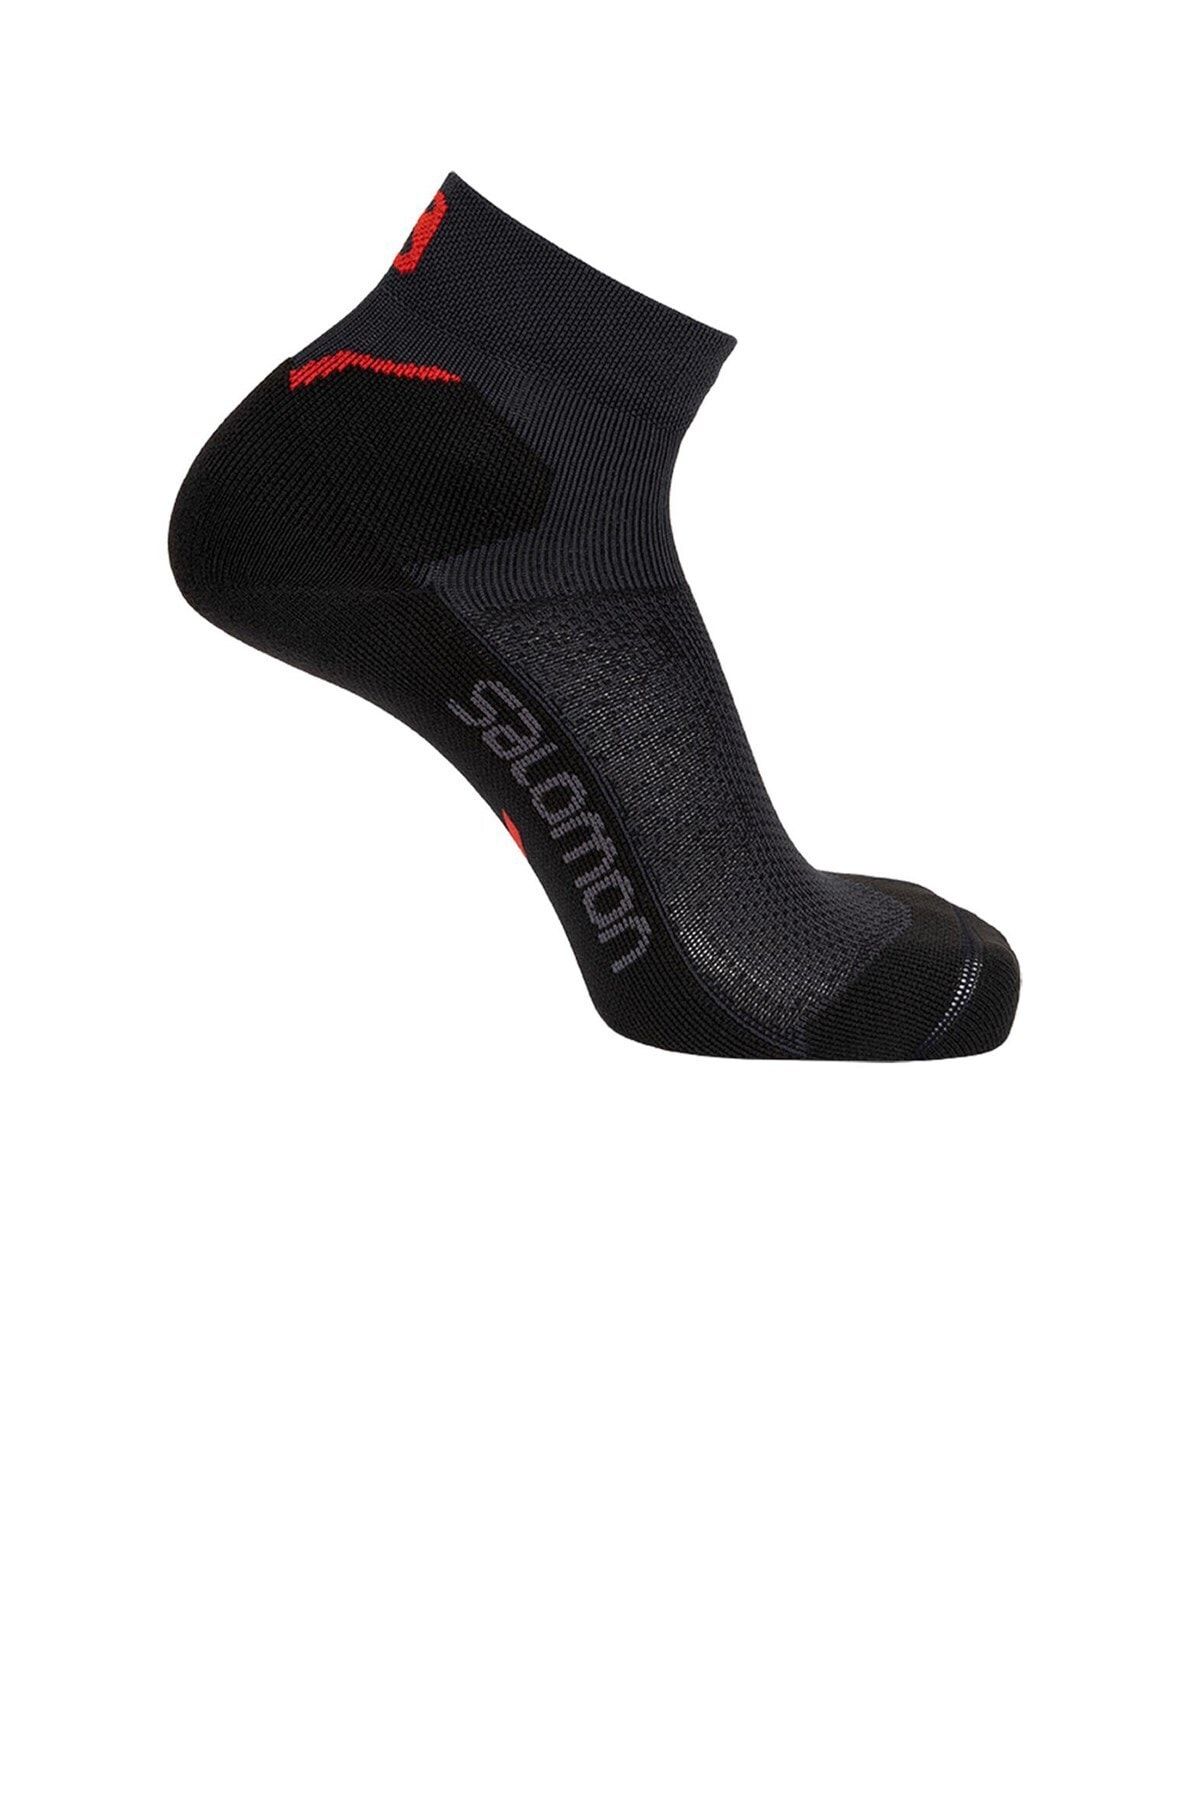 Salomon Speedcross Ankle Çorap Lc17809